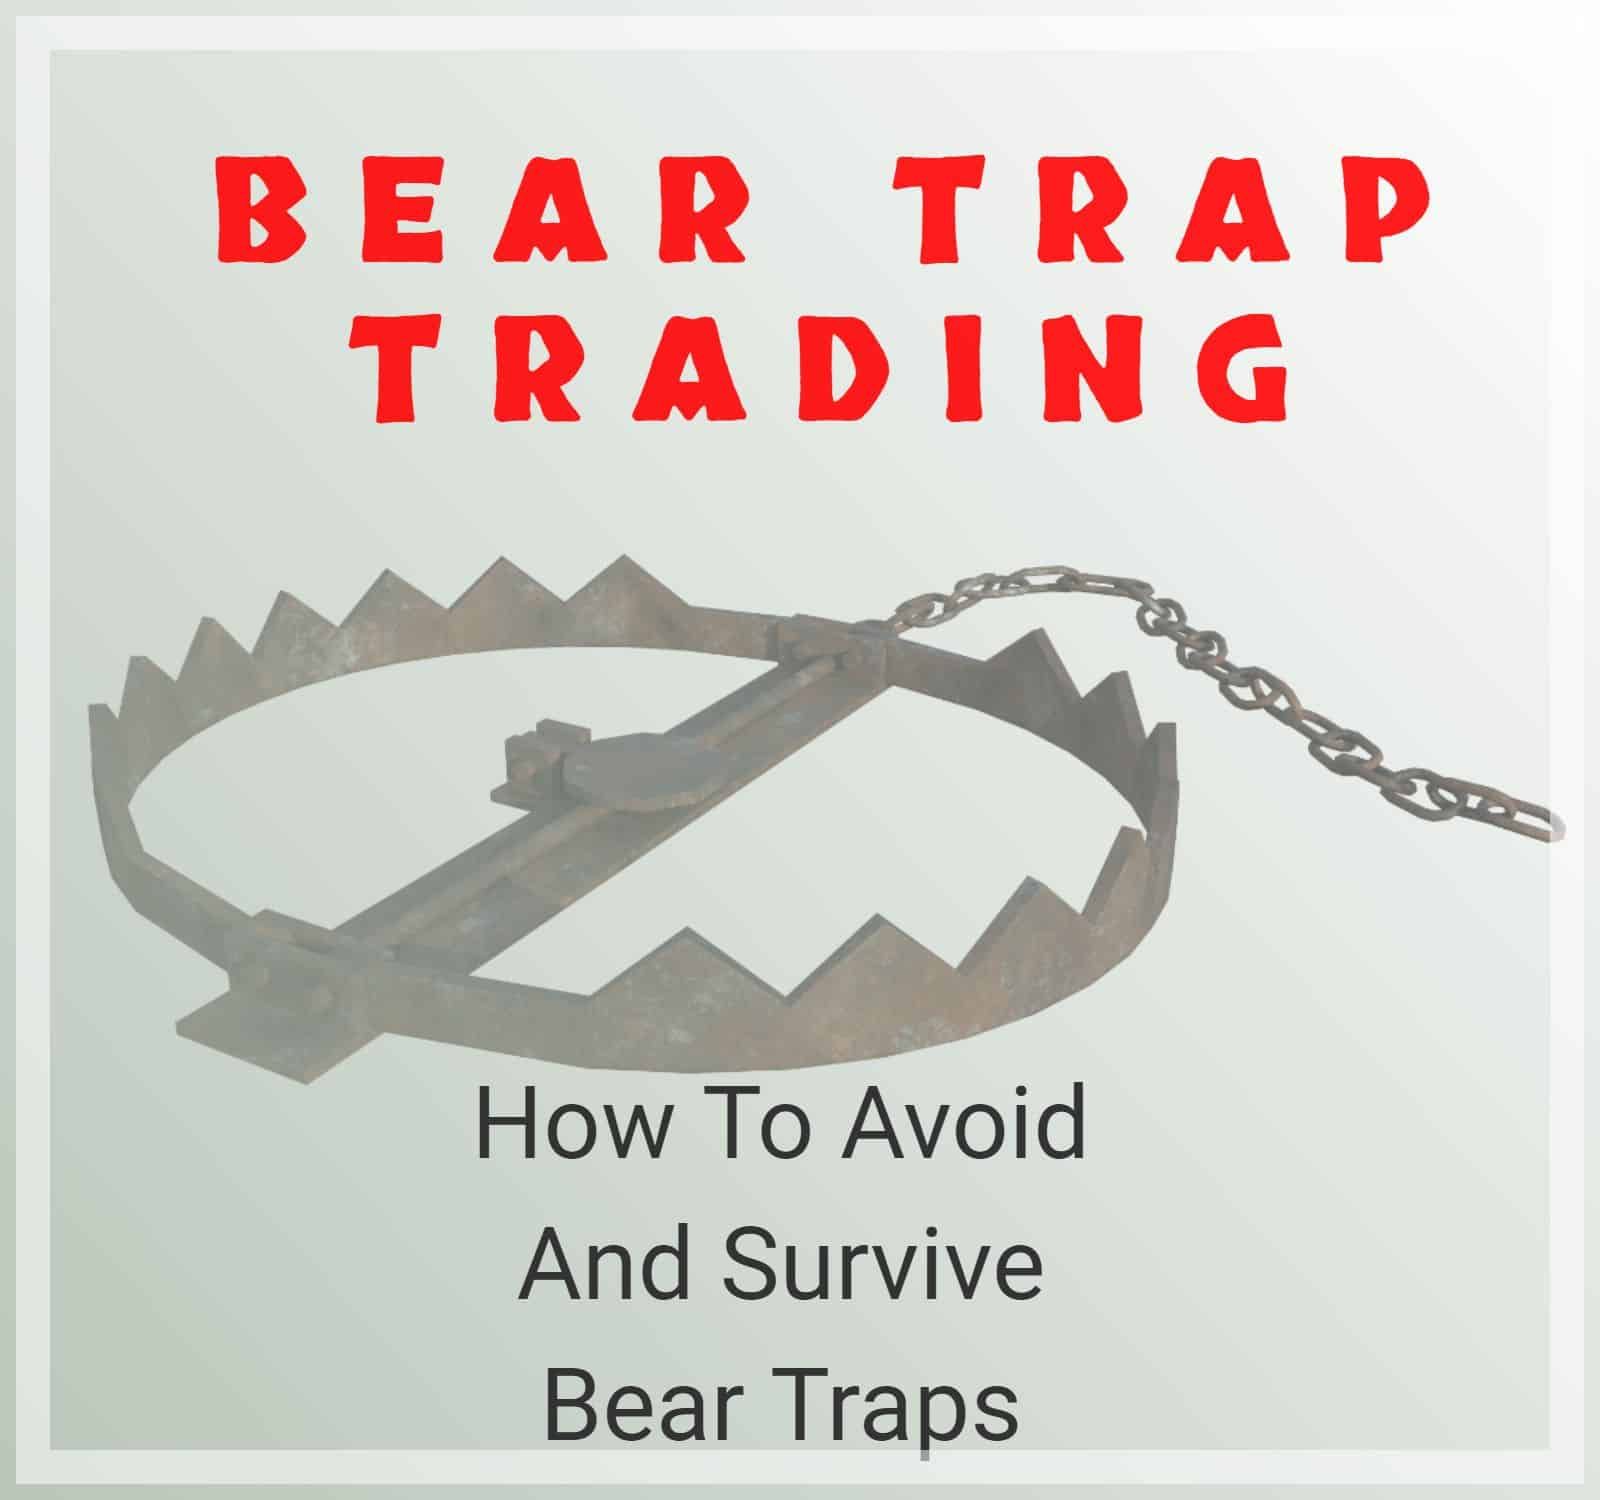 Bear trap là gì? Hướng dẫn trader cách tránh “sập bẫy” giảm giá này